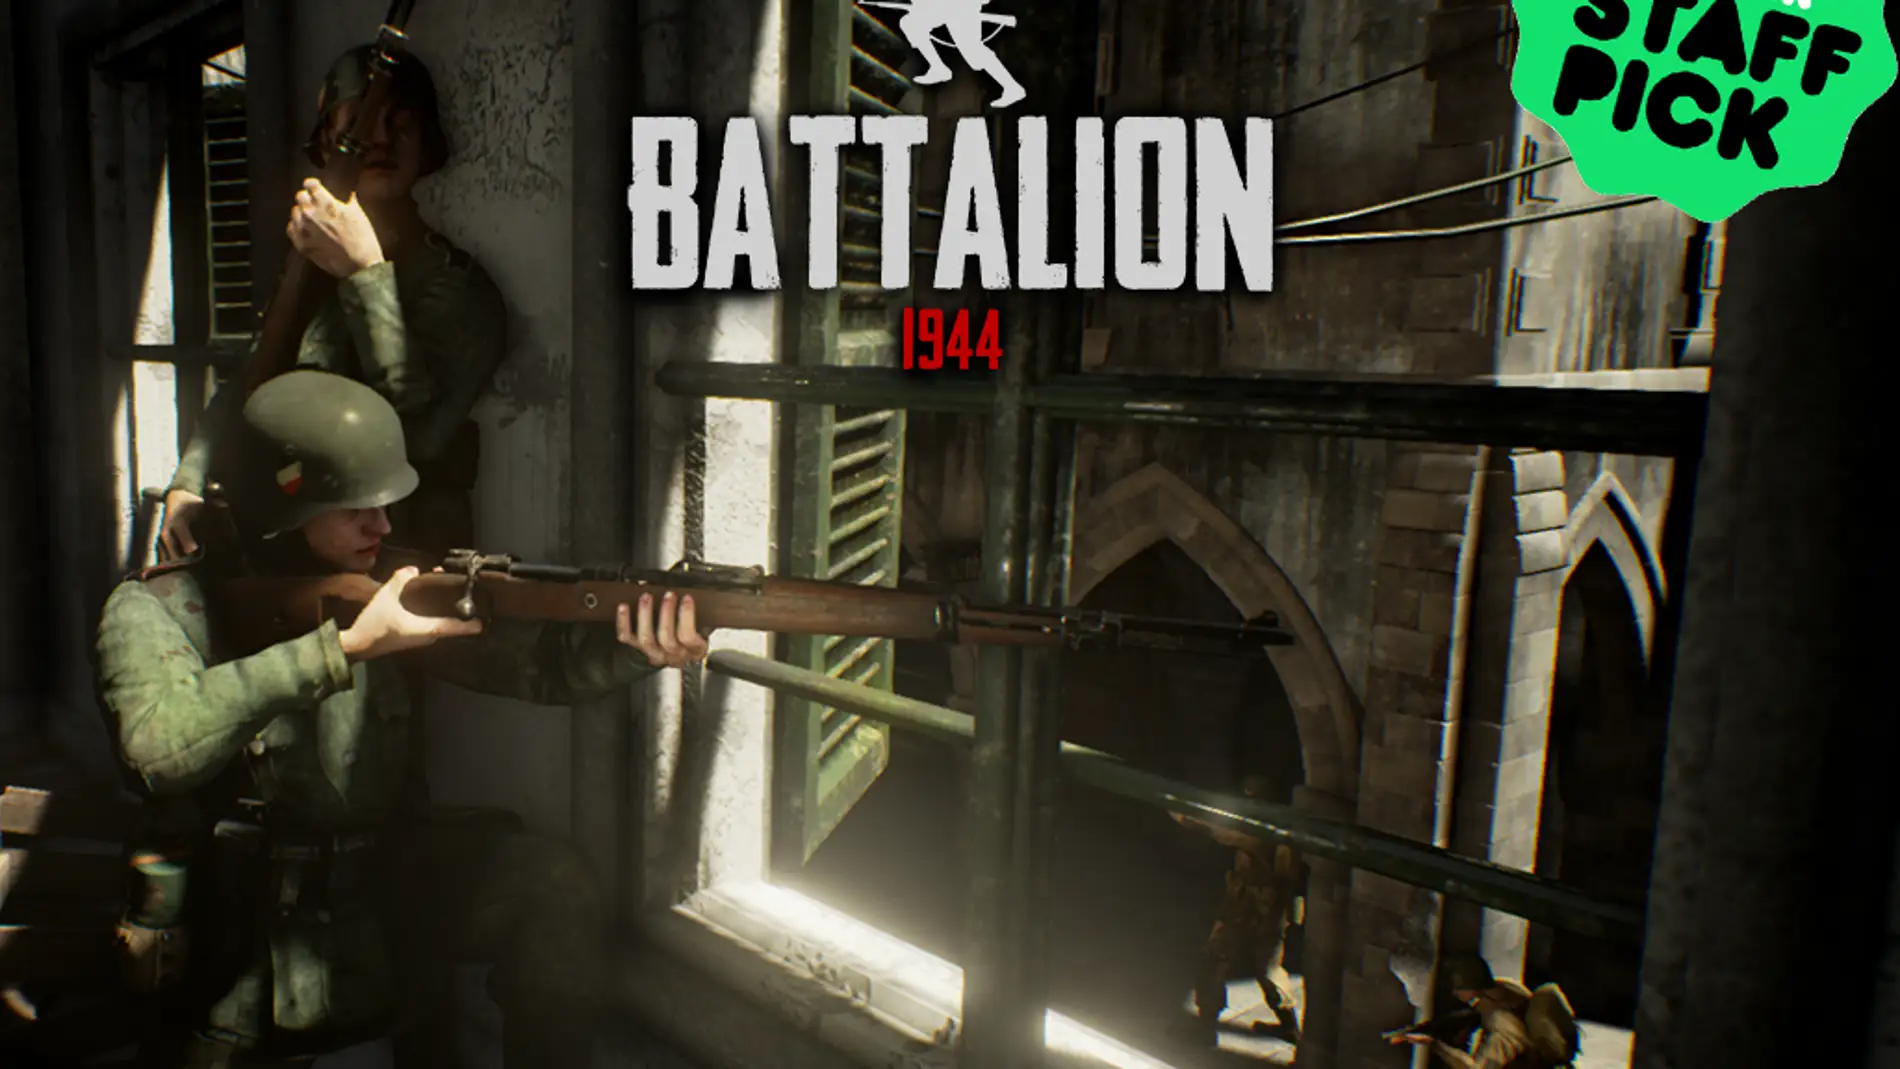 Batallion 1944